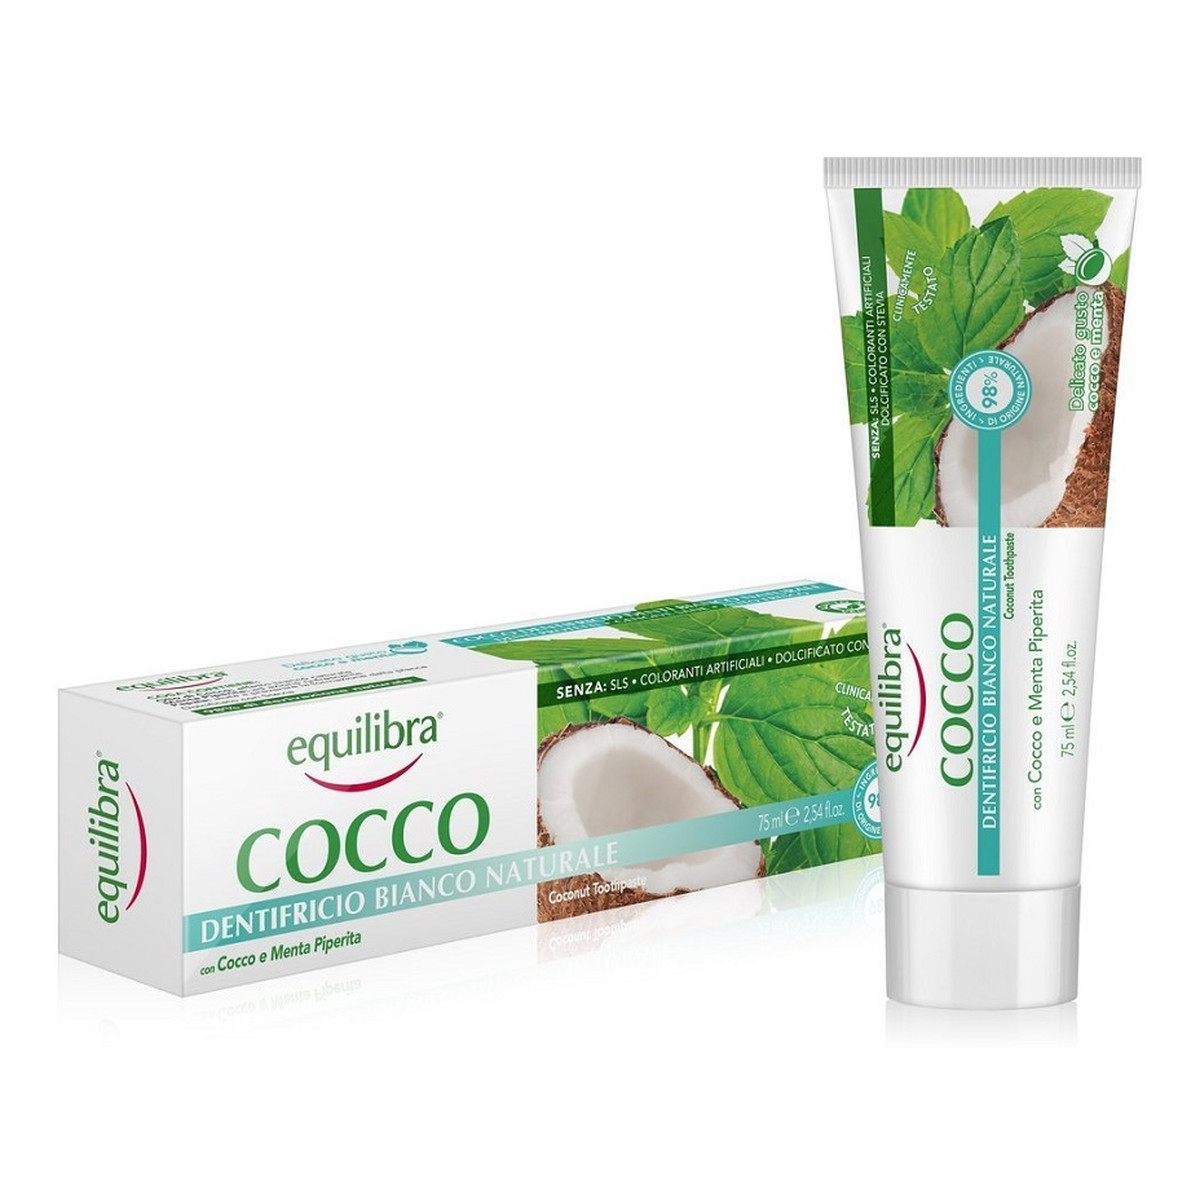 Equilibra Cocco toothpaste kokosowa pasta do zębów naturalna biel 75ml